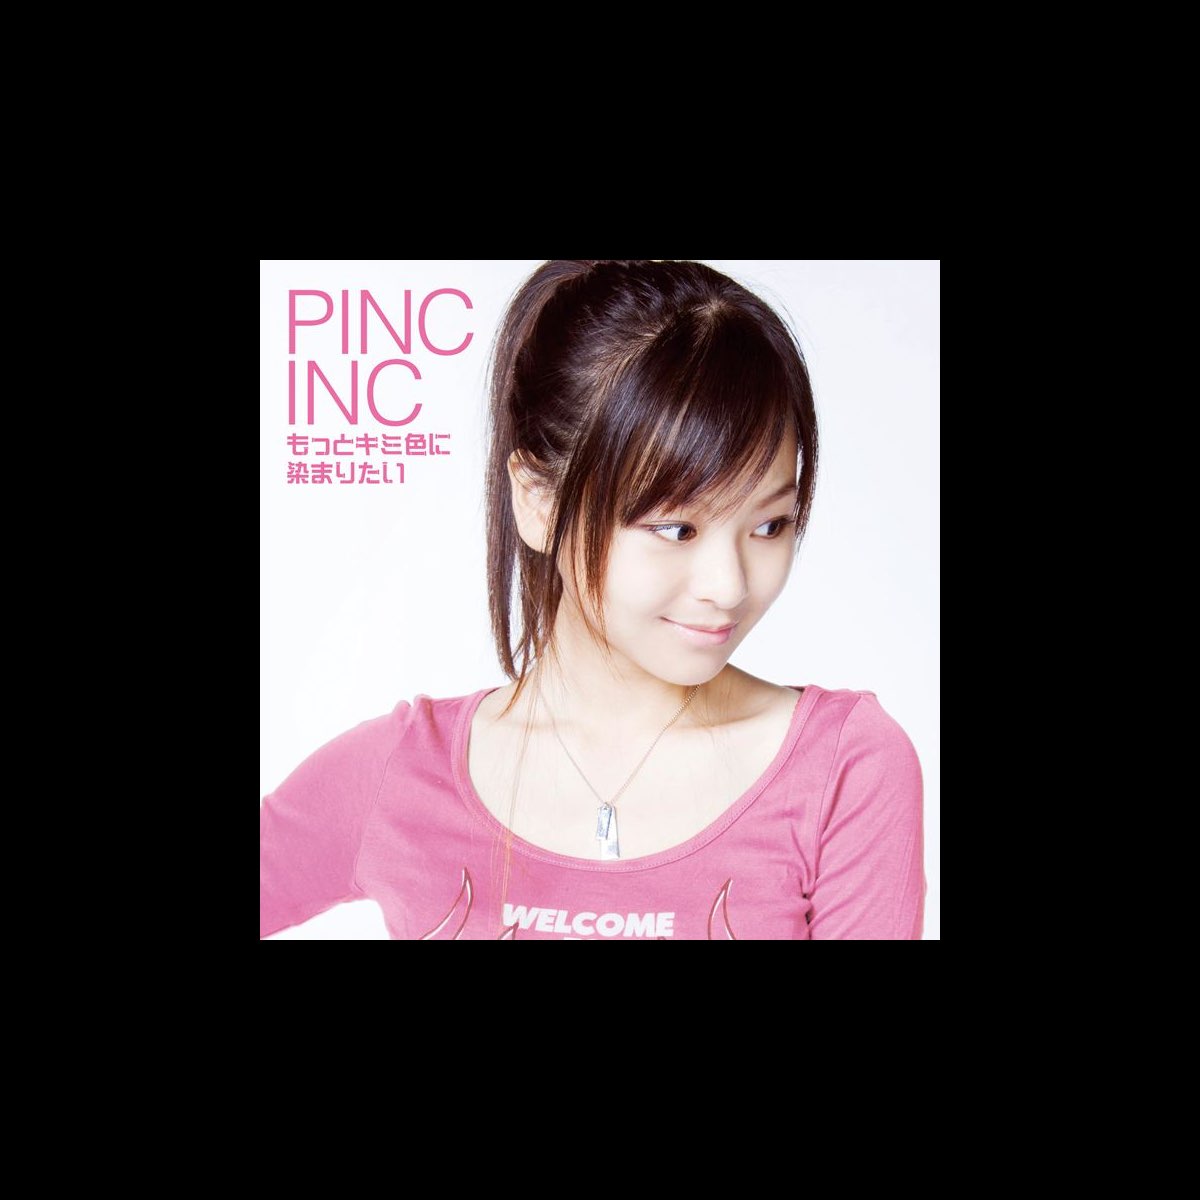 もっとキミ色に染まりたい - PINC INCのアルバム - Apple Music